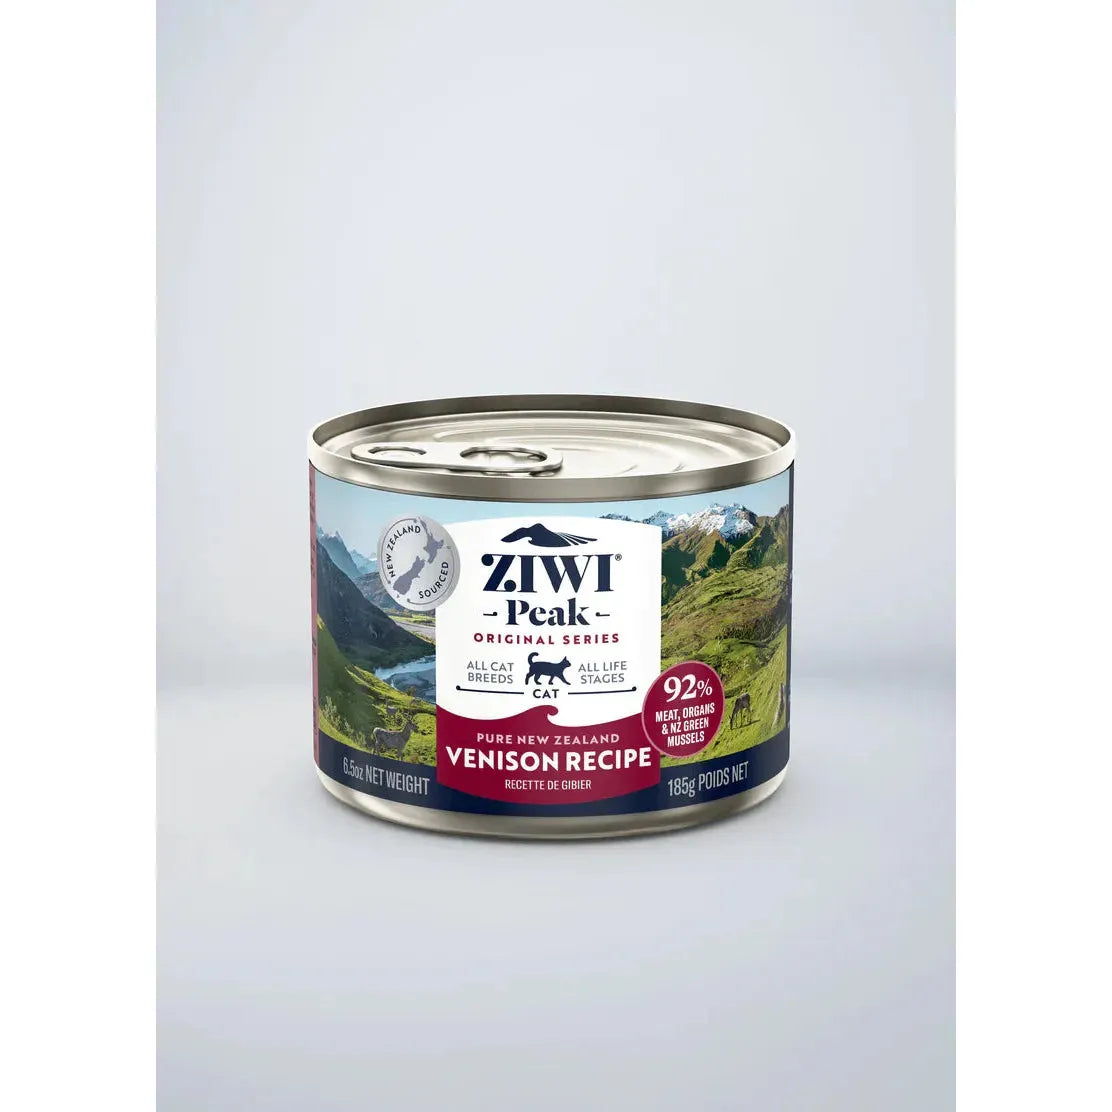 ZIWI Peak Cat Wet Food Cans Venison Recipe